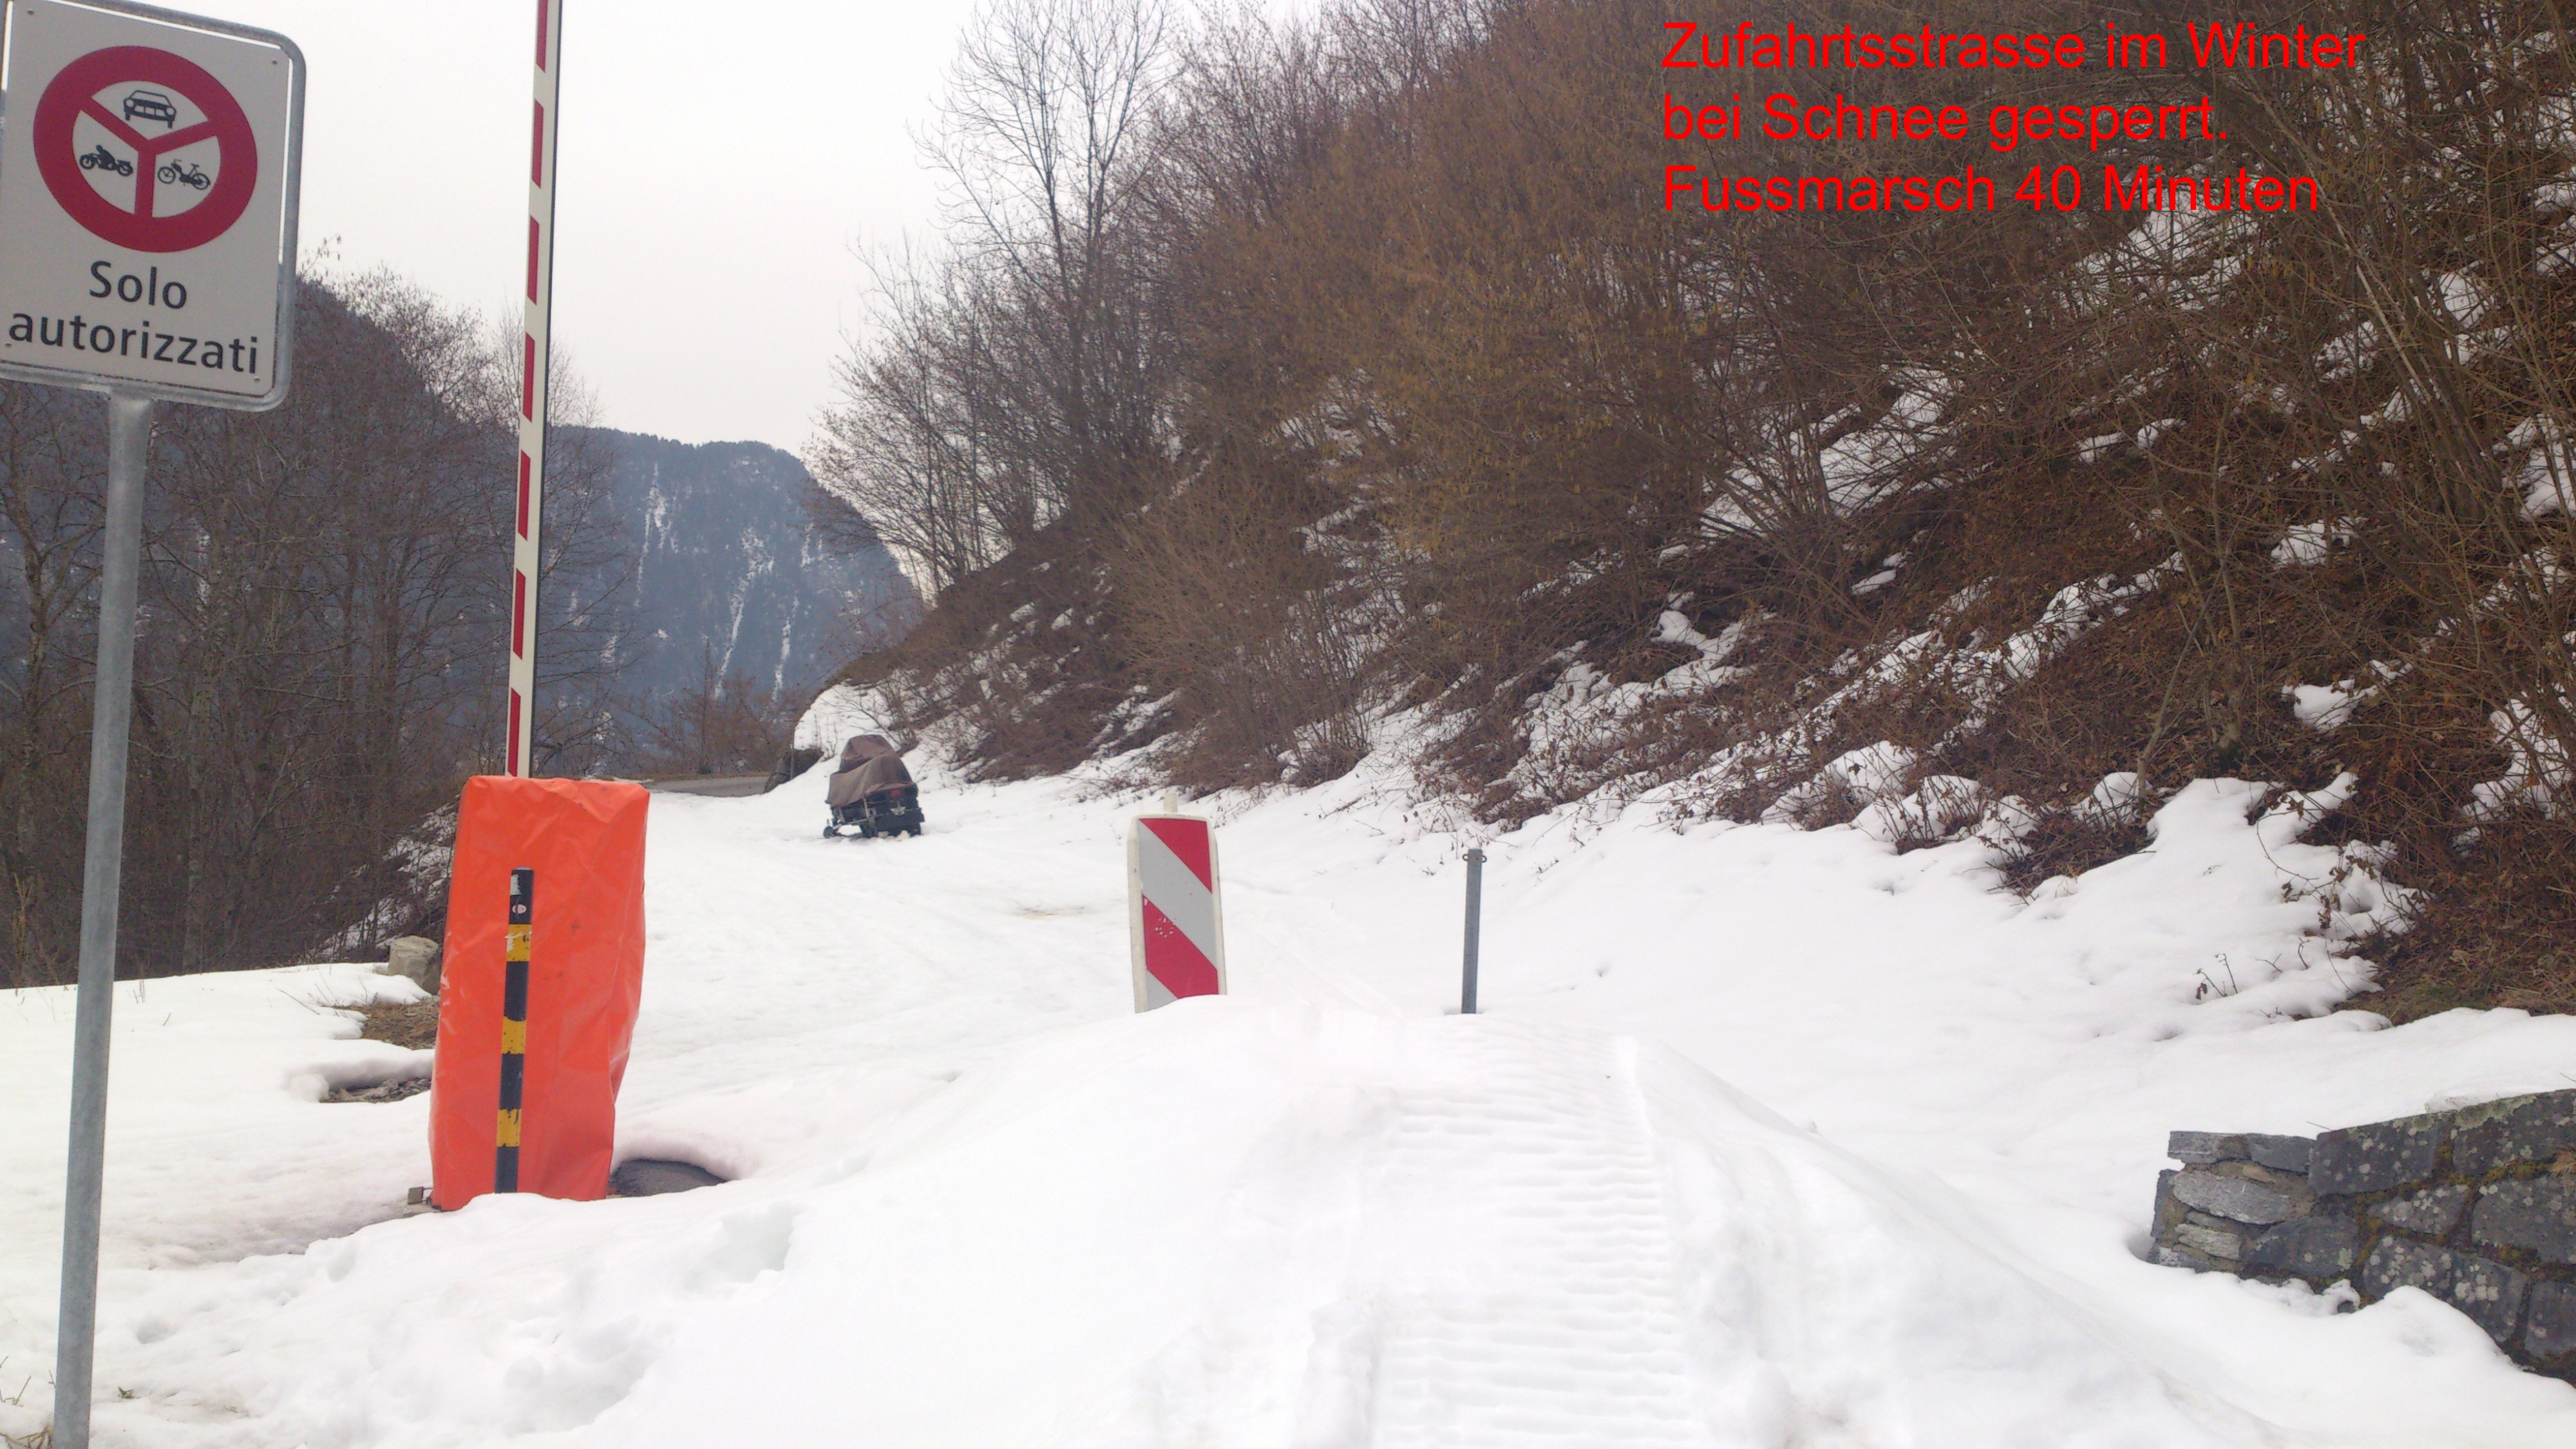 DSC_0097 Rustico Arvigo Winter Strasse gesperrt (mit Wasserzeichen)